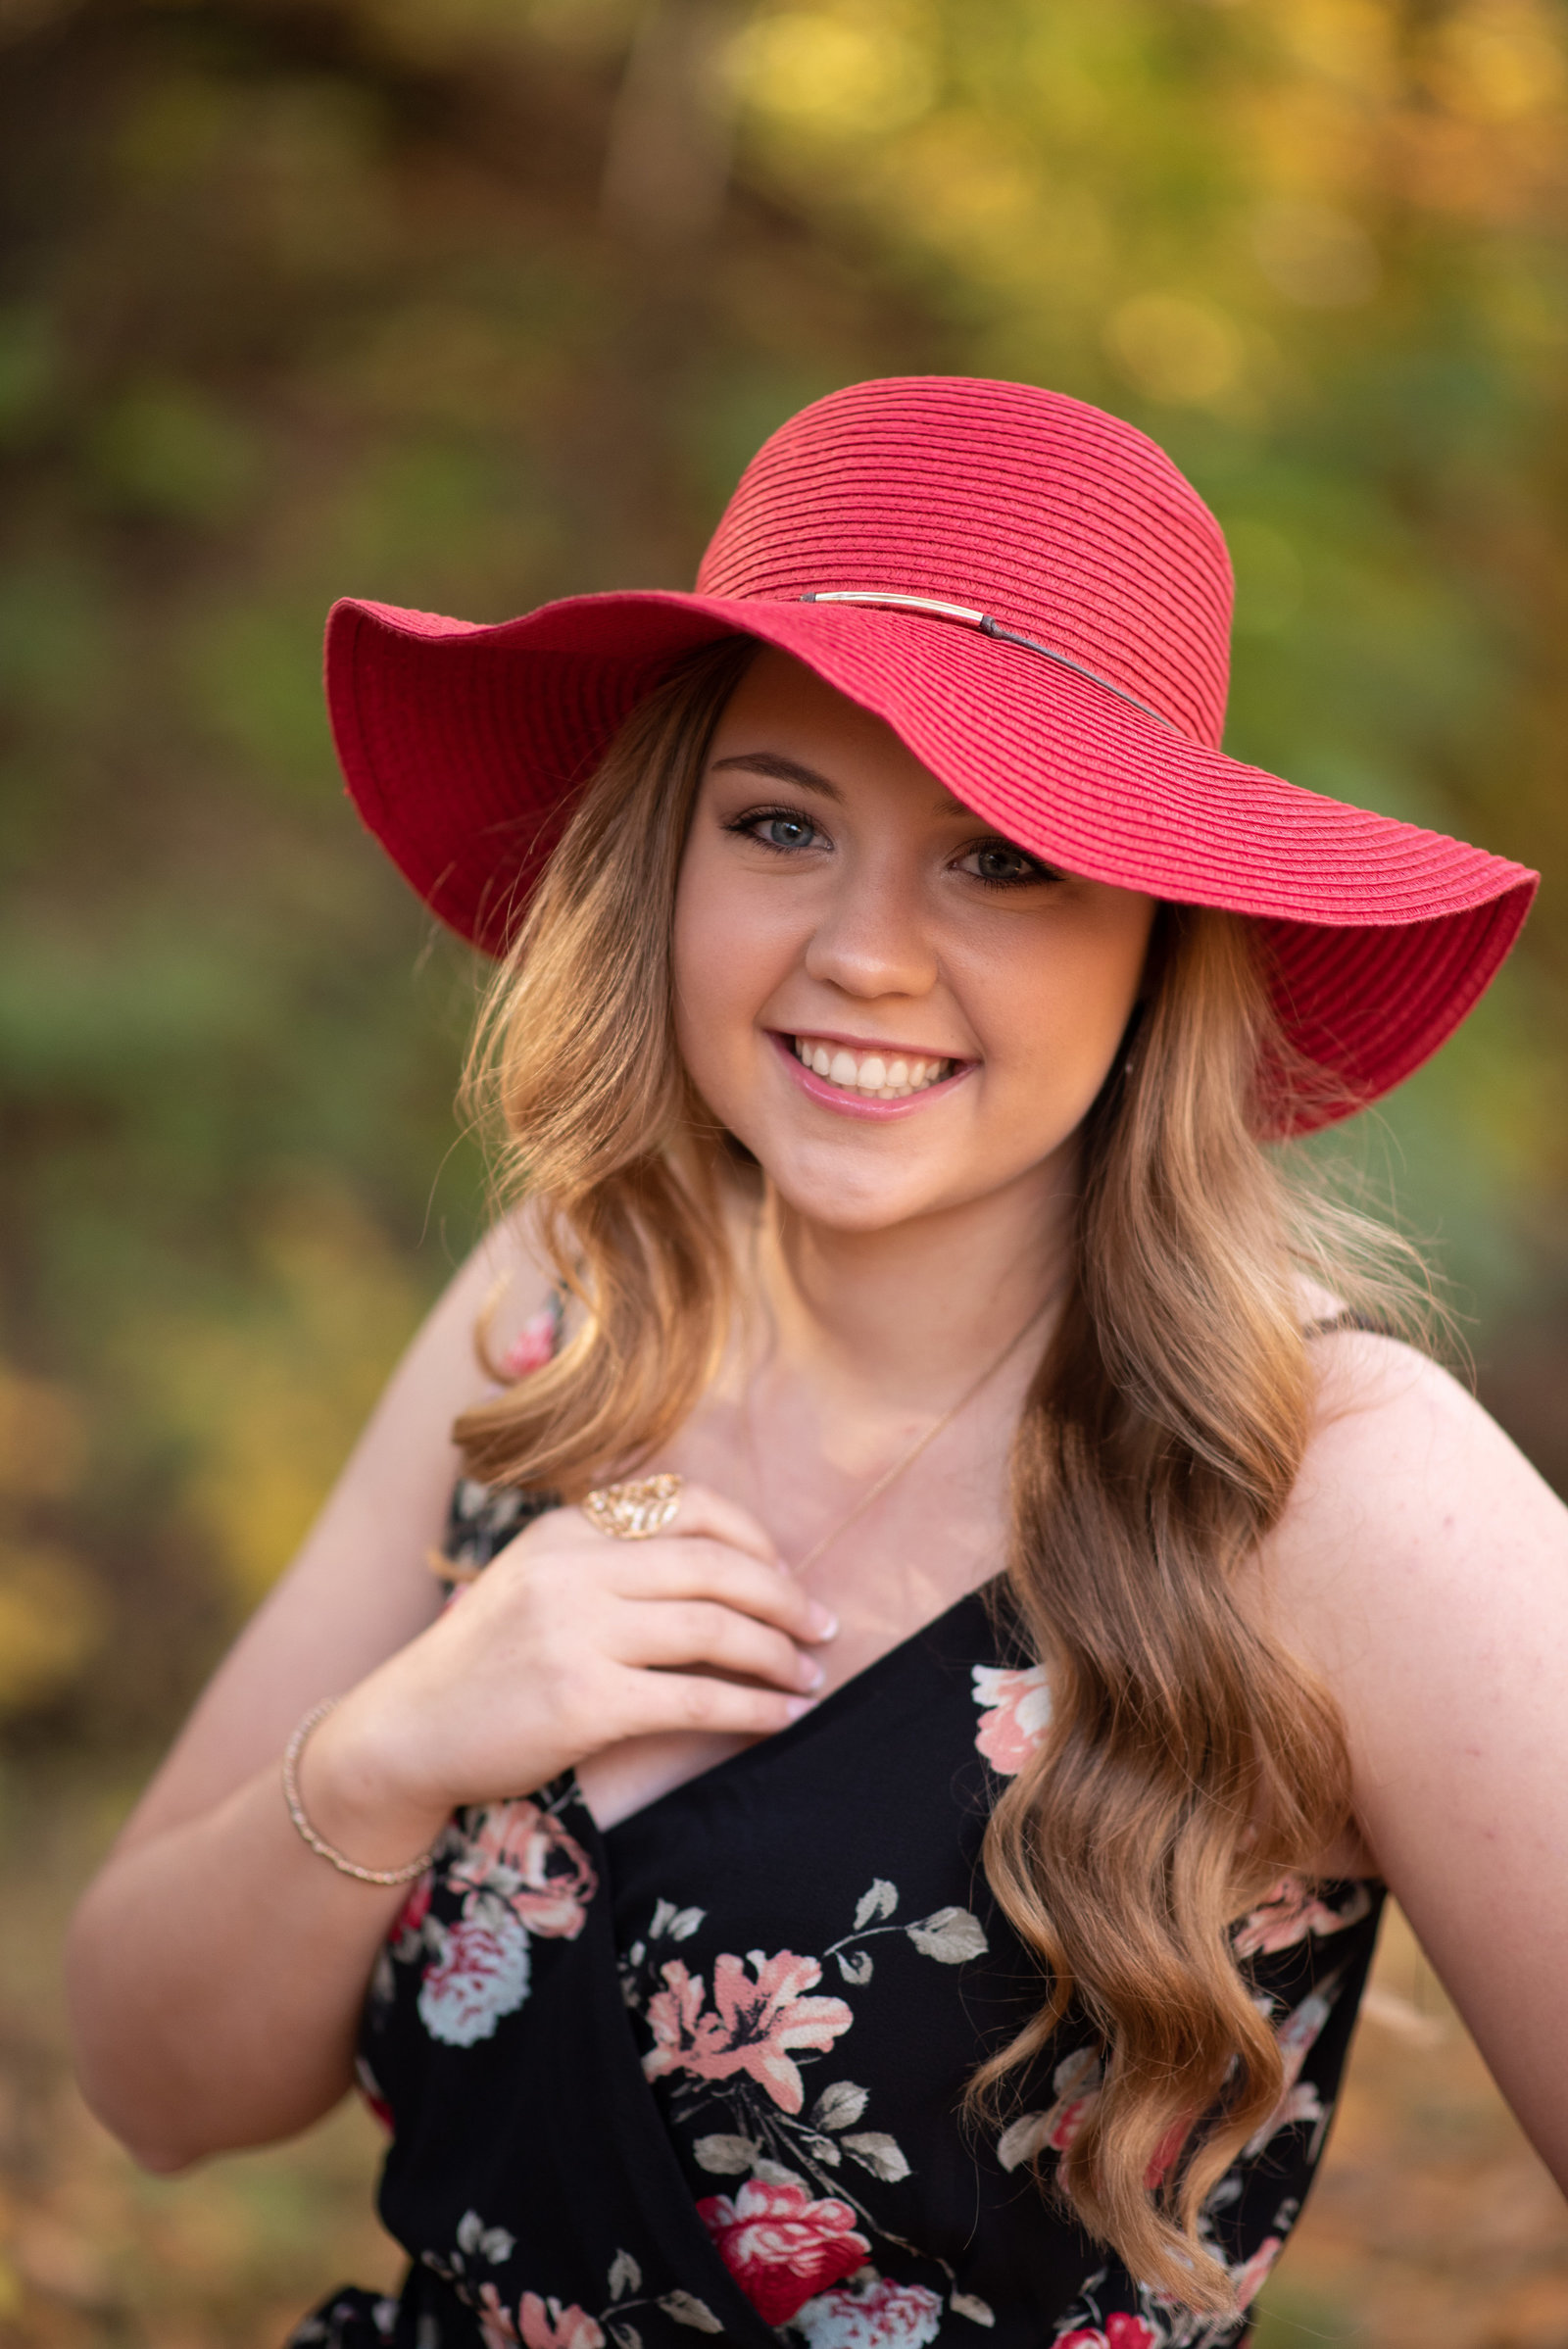 Senior Girl in red hat